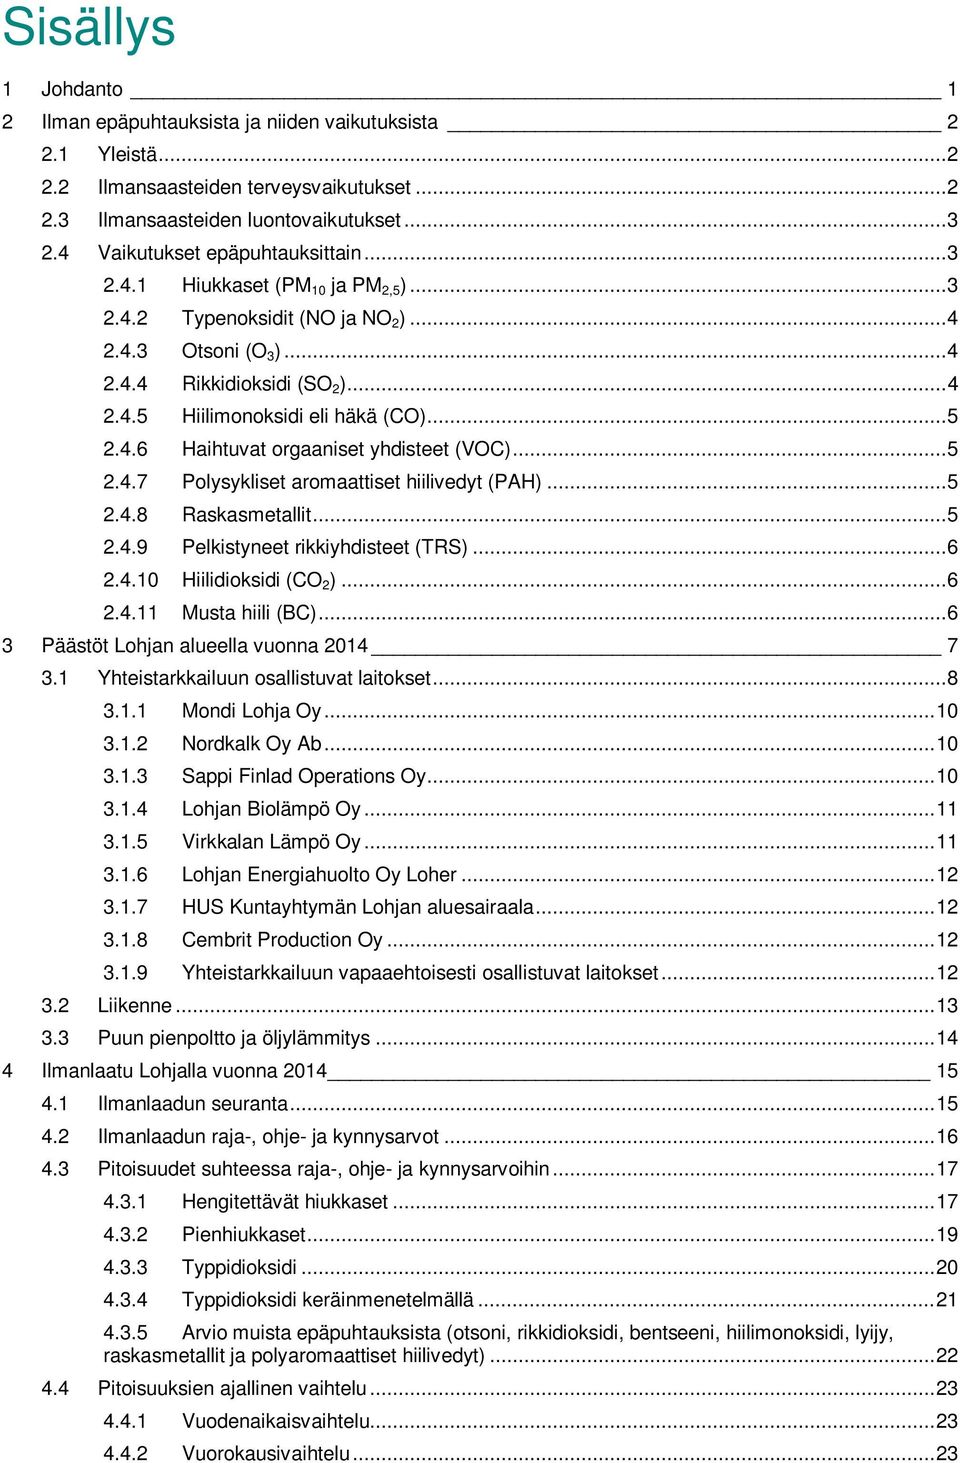 .. 5 2.4.6 Haihtuvat orgaaniset yhdisteet (VOC)... 5 2.4.7 Polysykliset aromaattiset hiilivedyt (PAH)... 5 2.4.8 Raskasmetallit... 5 2.4.9 Pelkistyneet rikkiyhdisteet (TRS)... 6 2.4.10 Hiilidioksidi (CO 2 ).